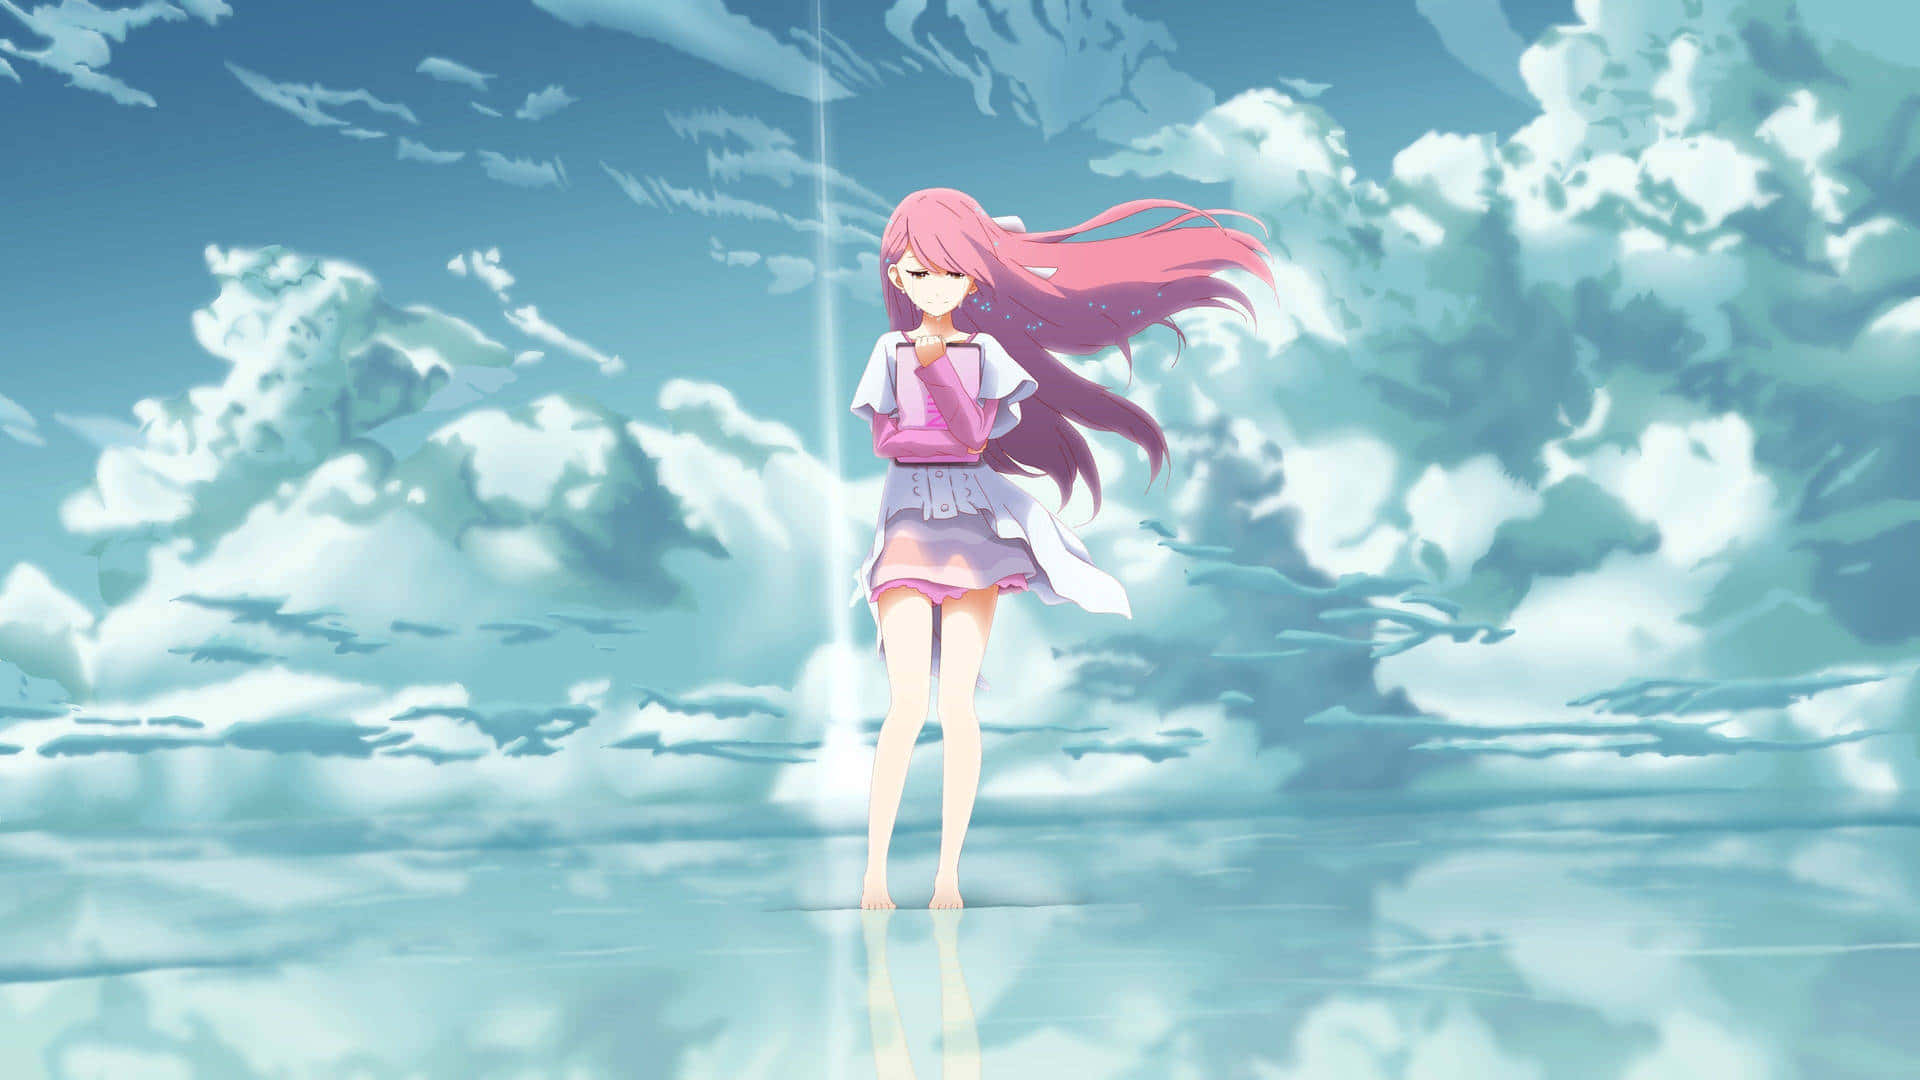 Anime Aesthetic Pfp Of Girl On Water Wallpaper